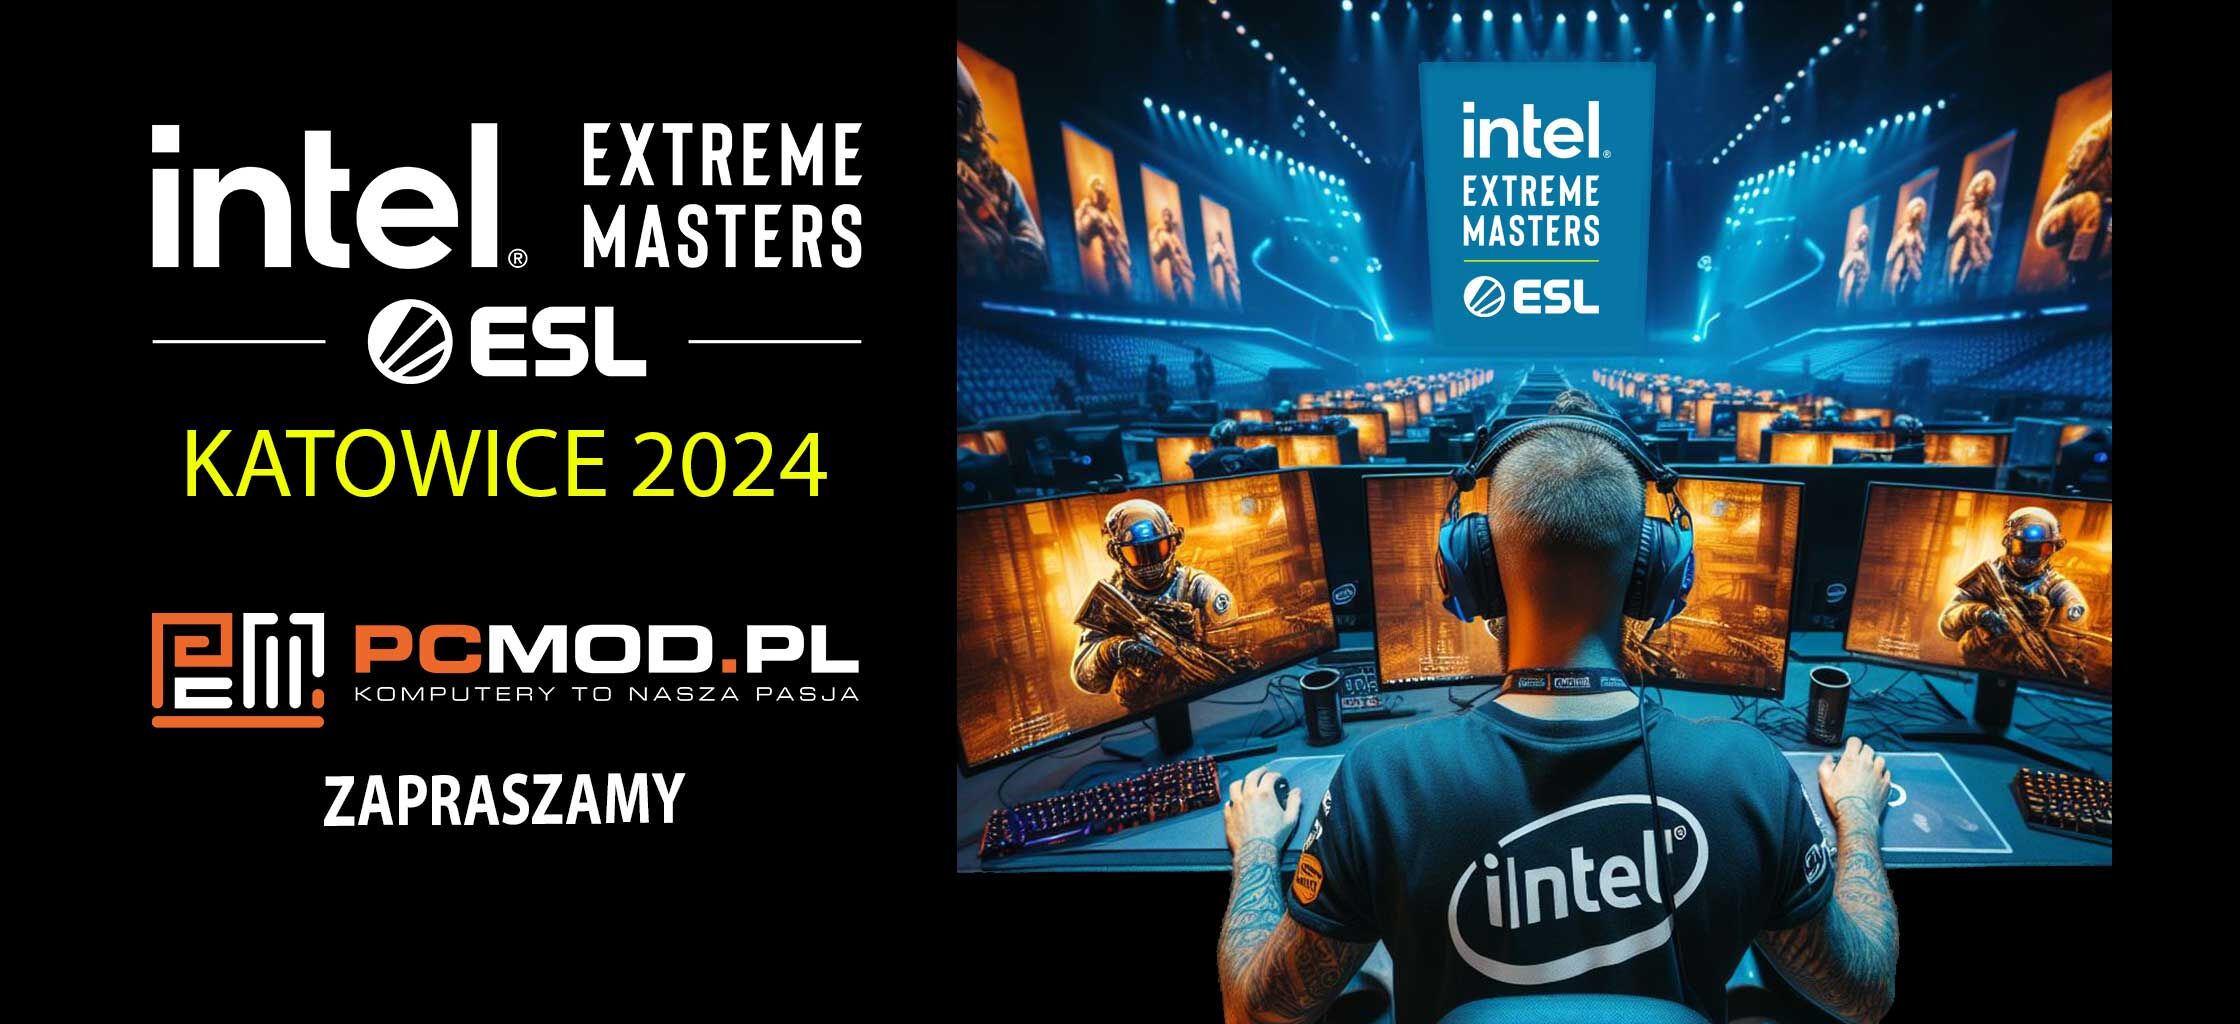 Intel-Extreme-Masters-Katowice-2024